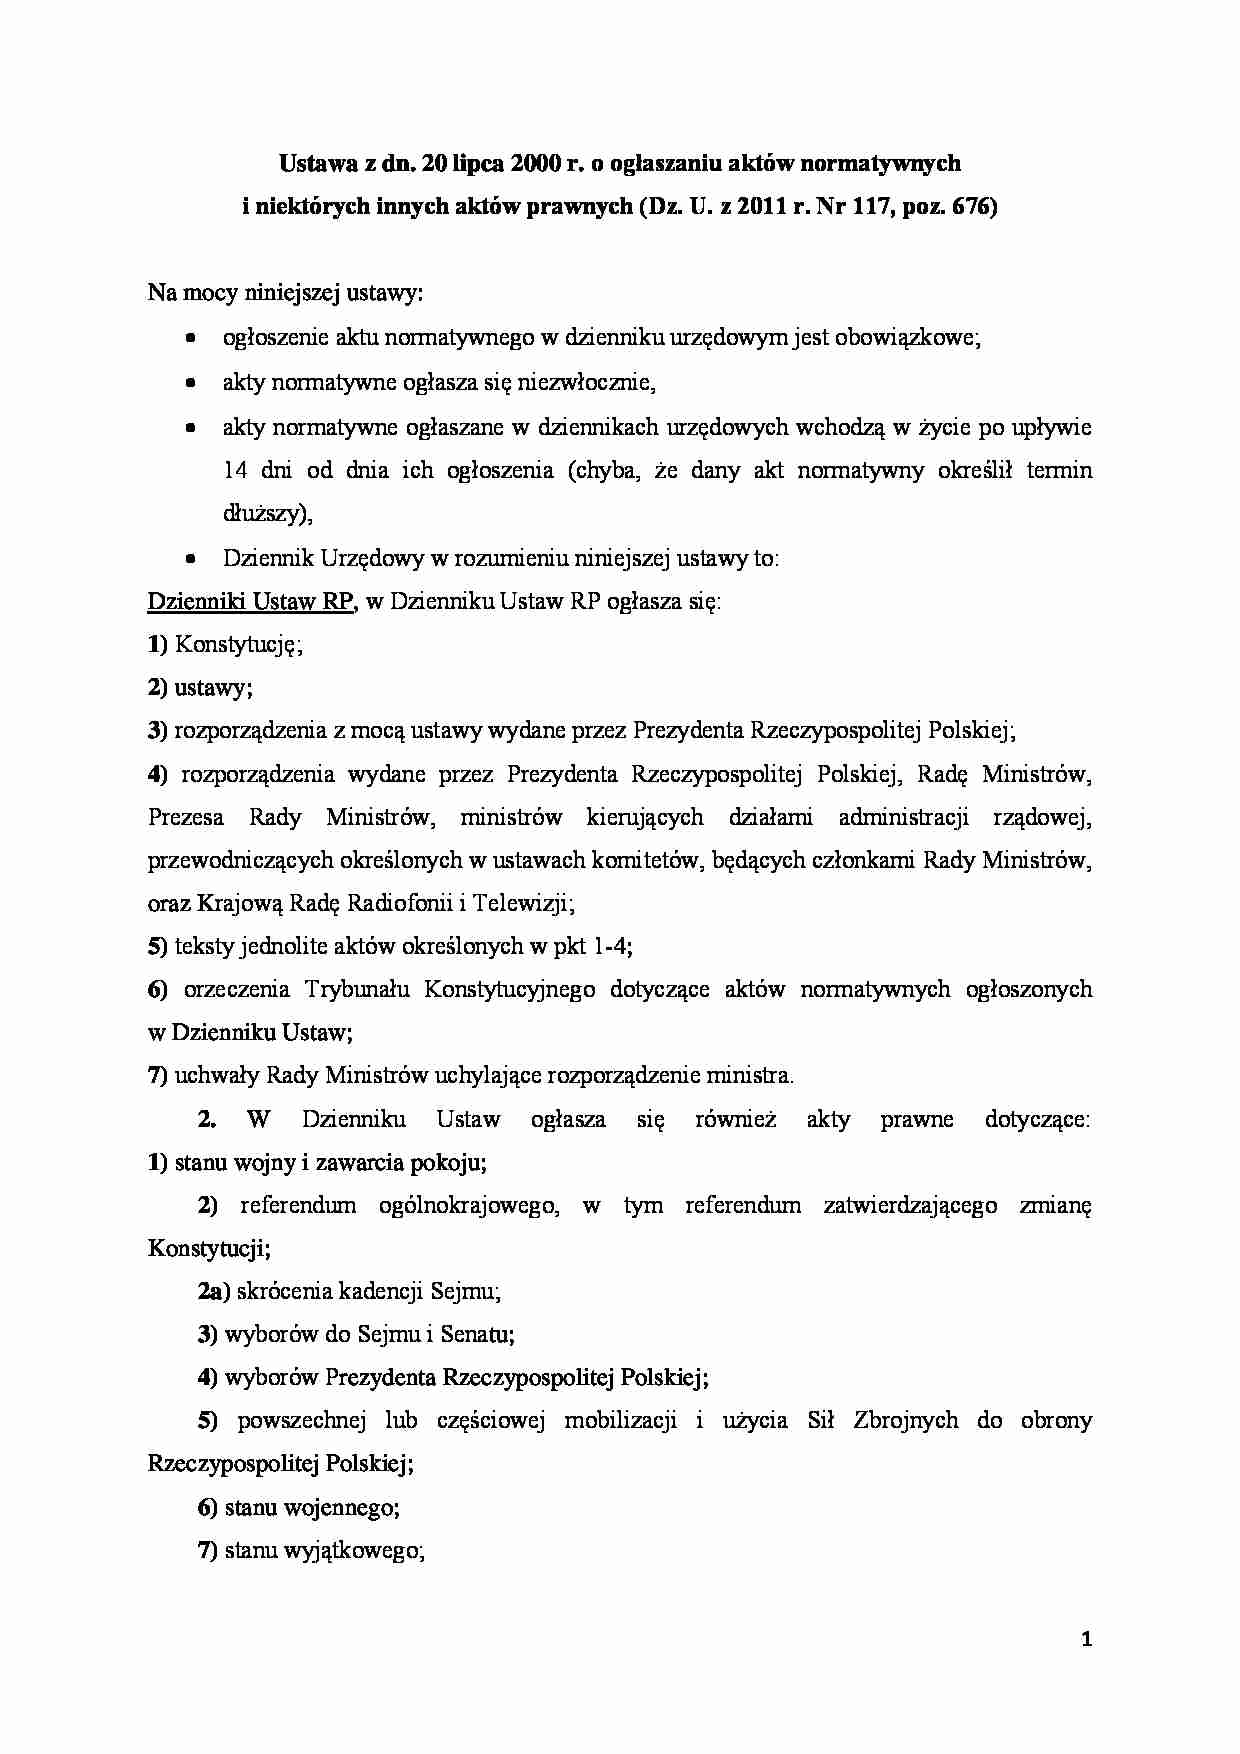 Ogłaszanie aktów normatywnych - Dziennik urzędowy - strona 1